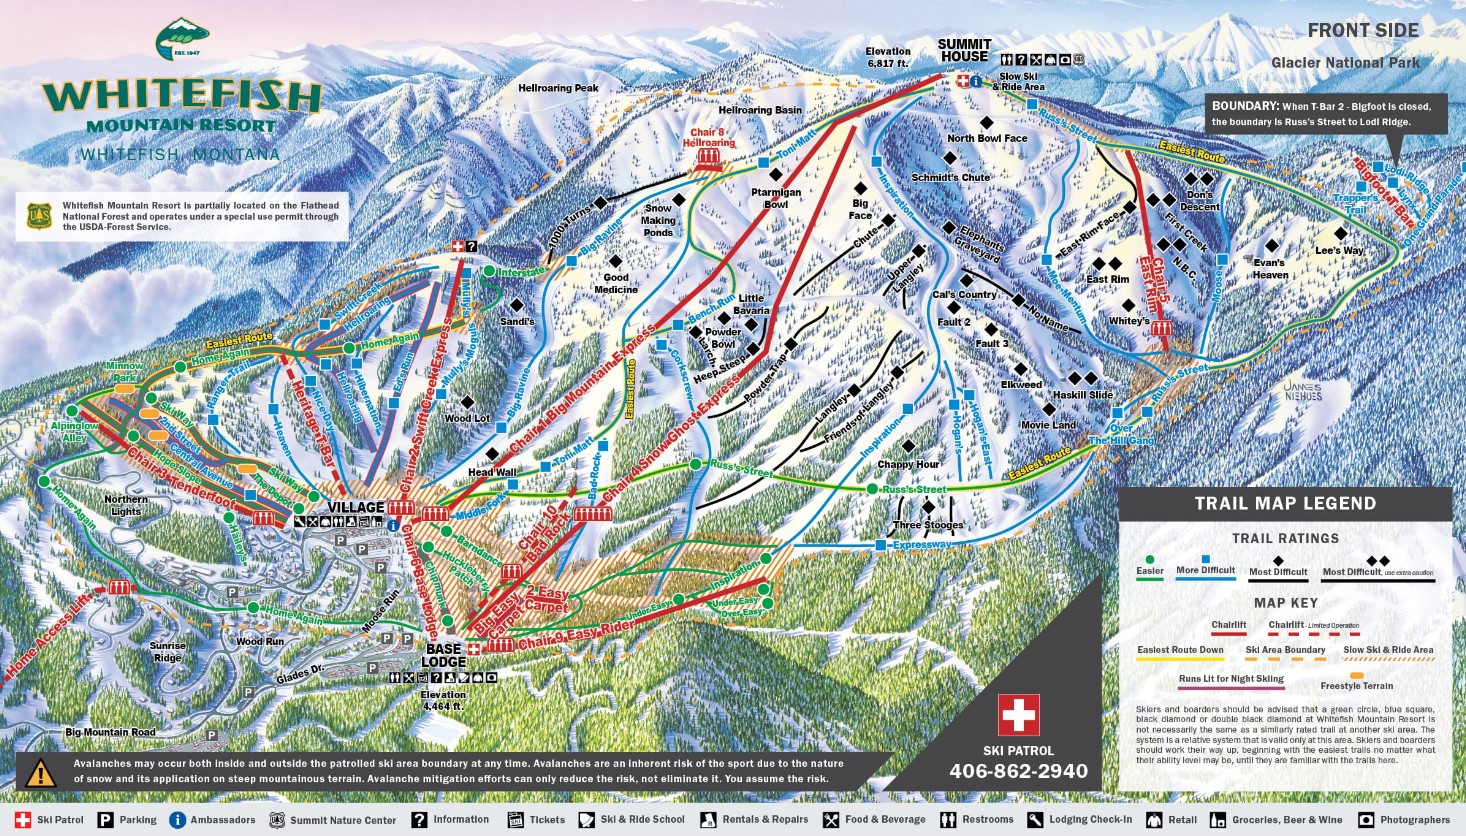 Trail Map of Whitefish Montana Ski Resort